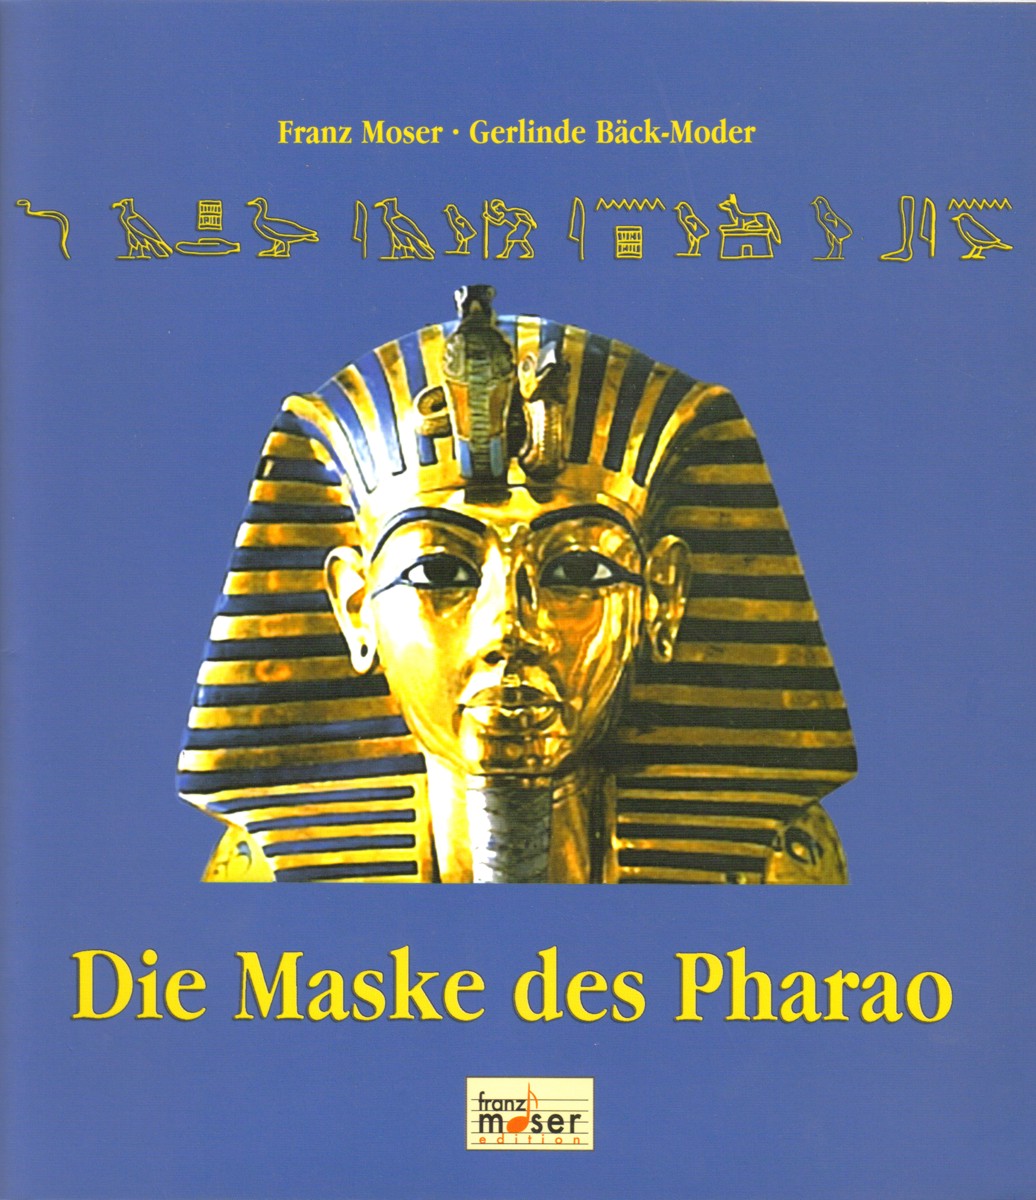 Maske des Pharao, Die - cliquez pour agrandir l'image